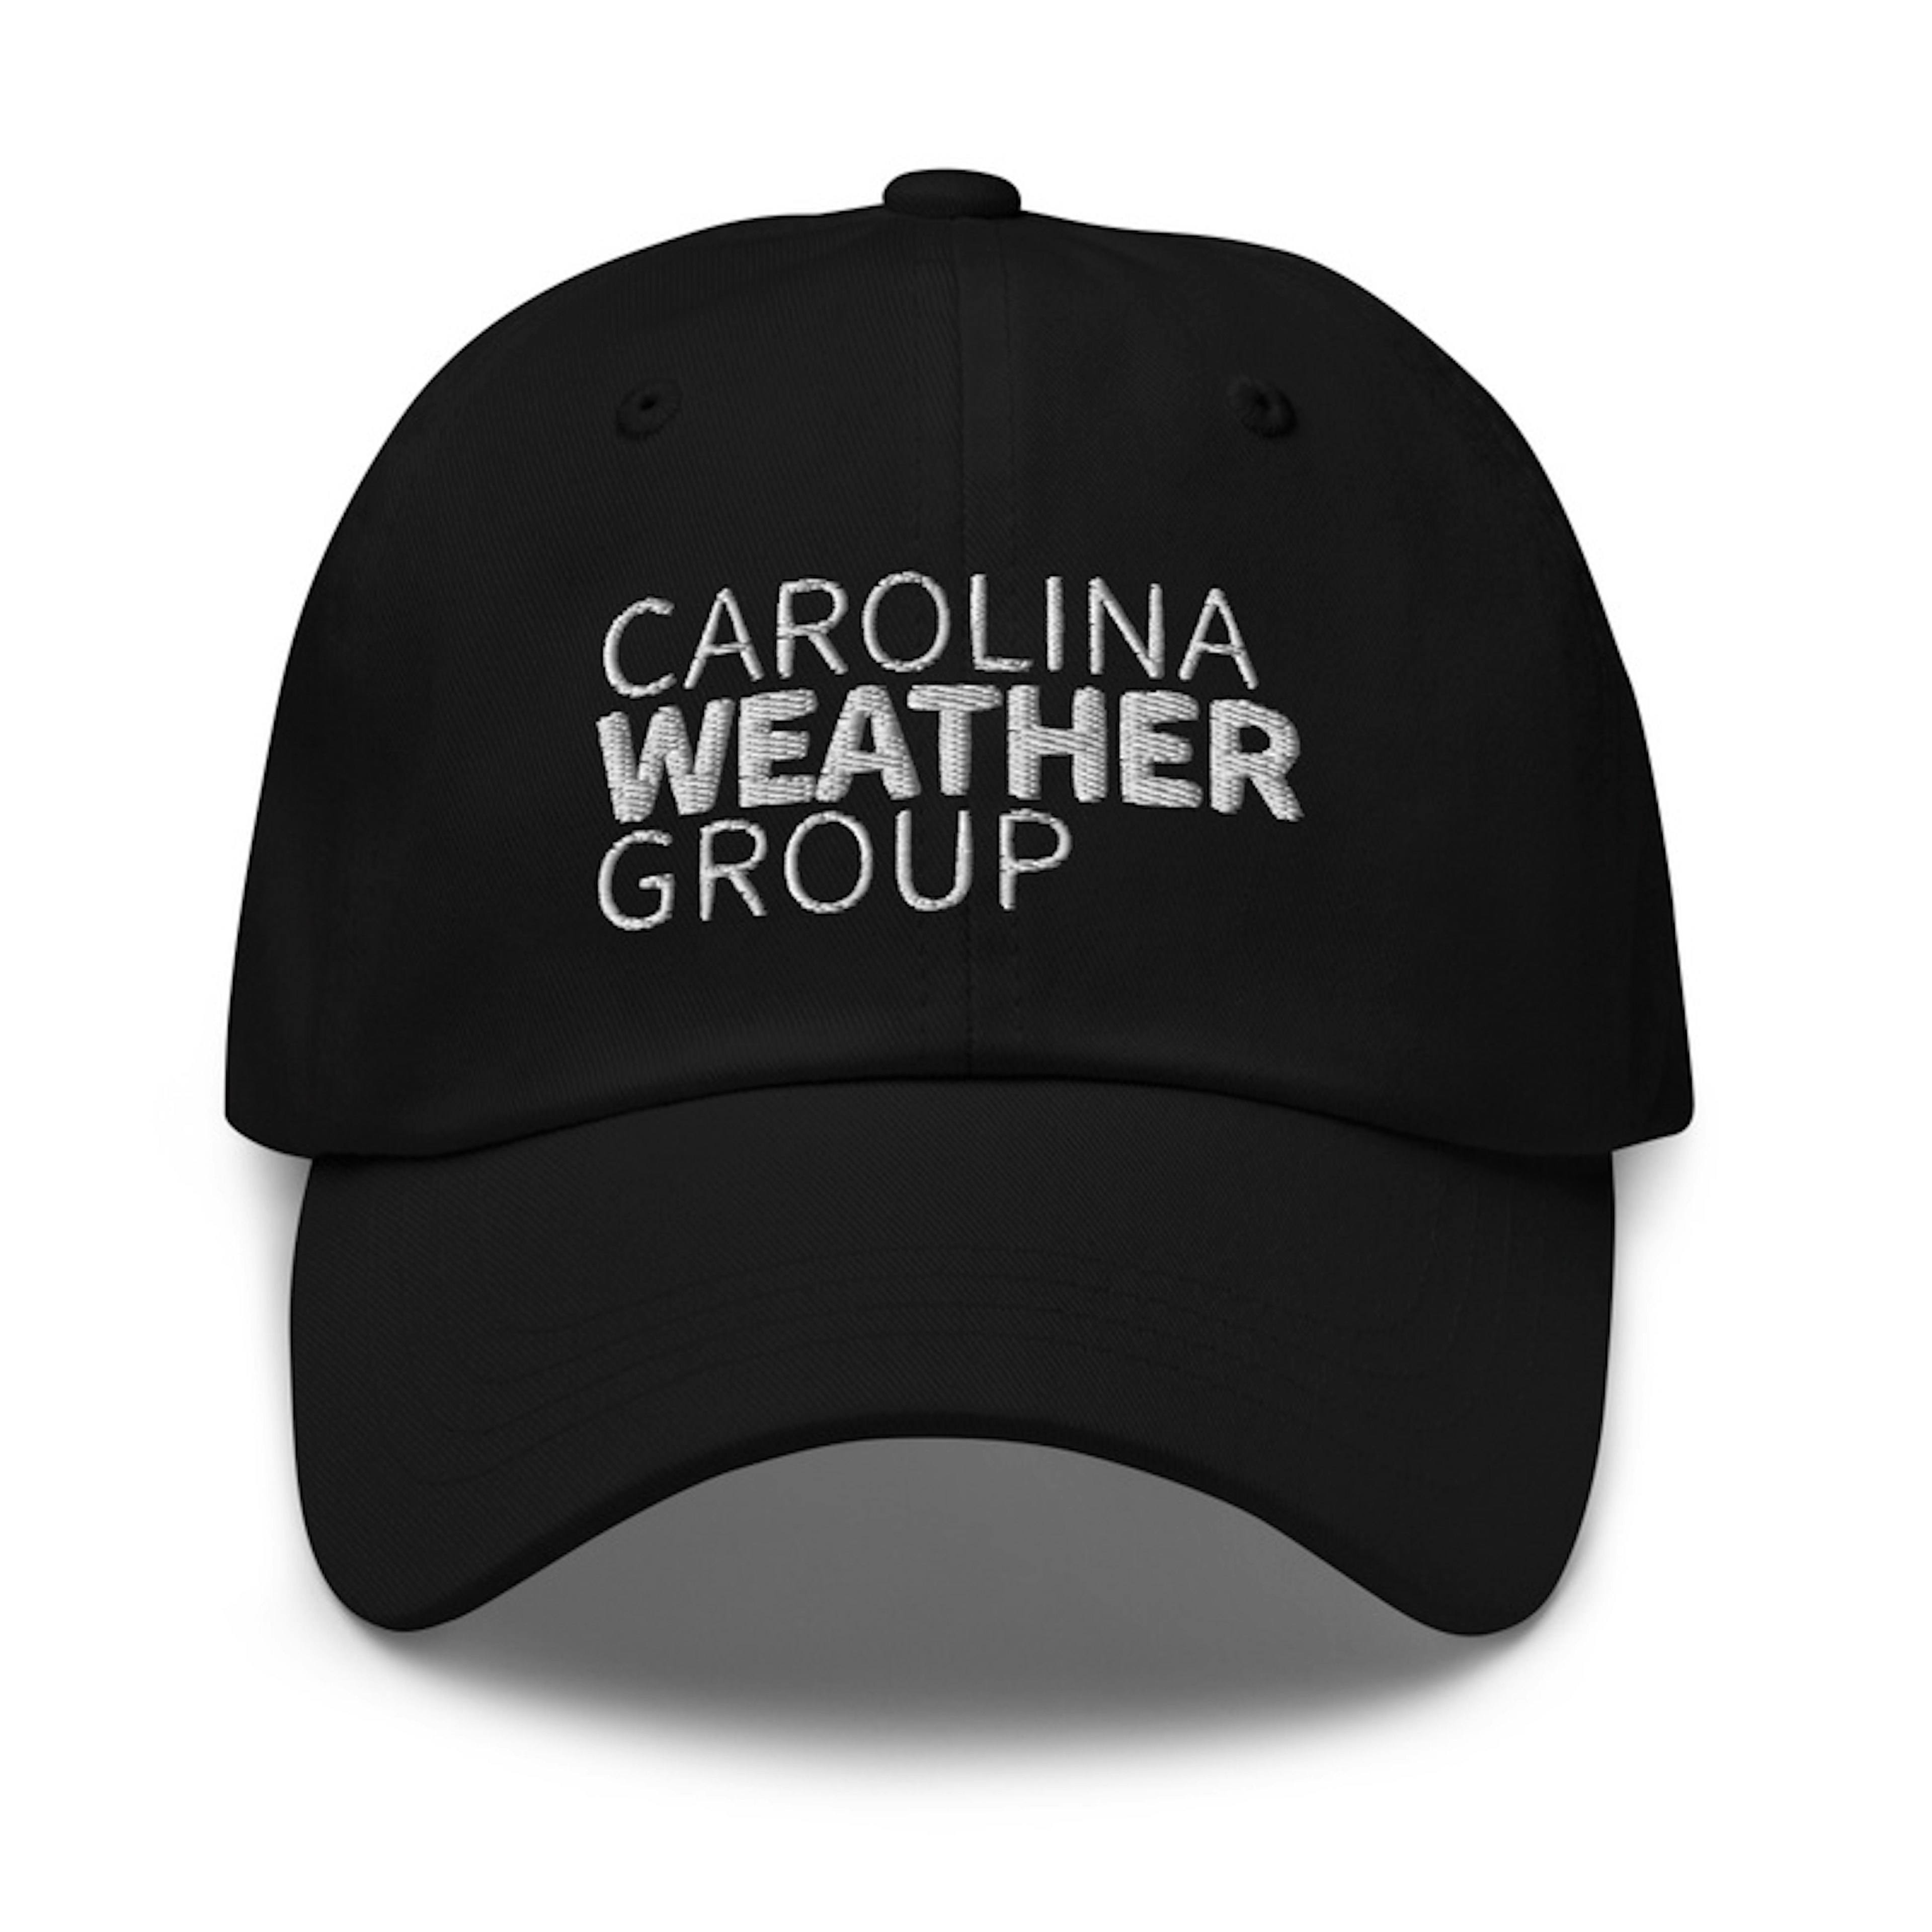 Carolina Weather Group hat